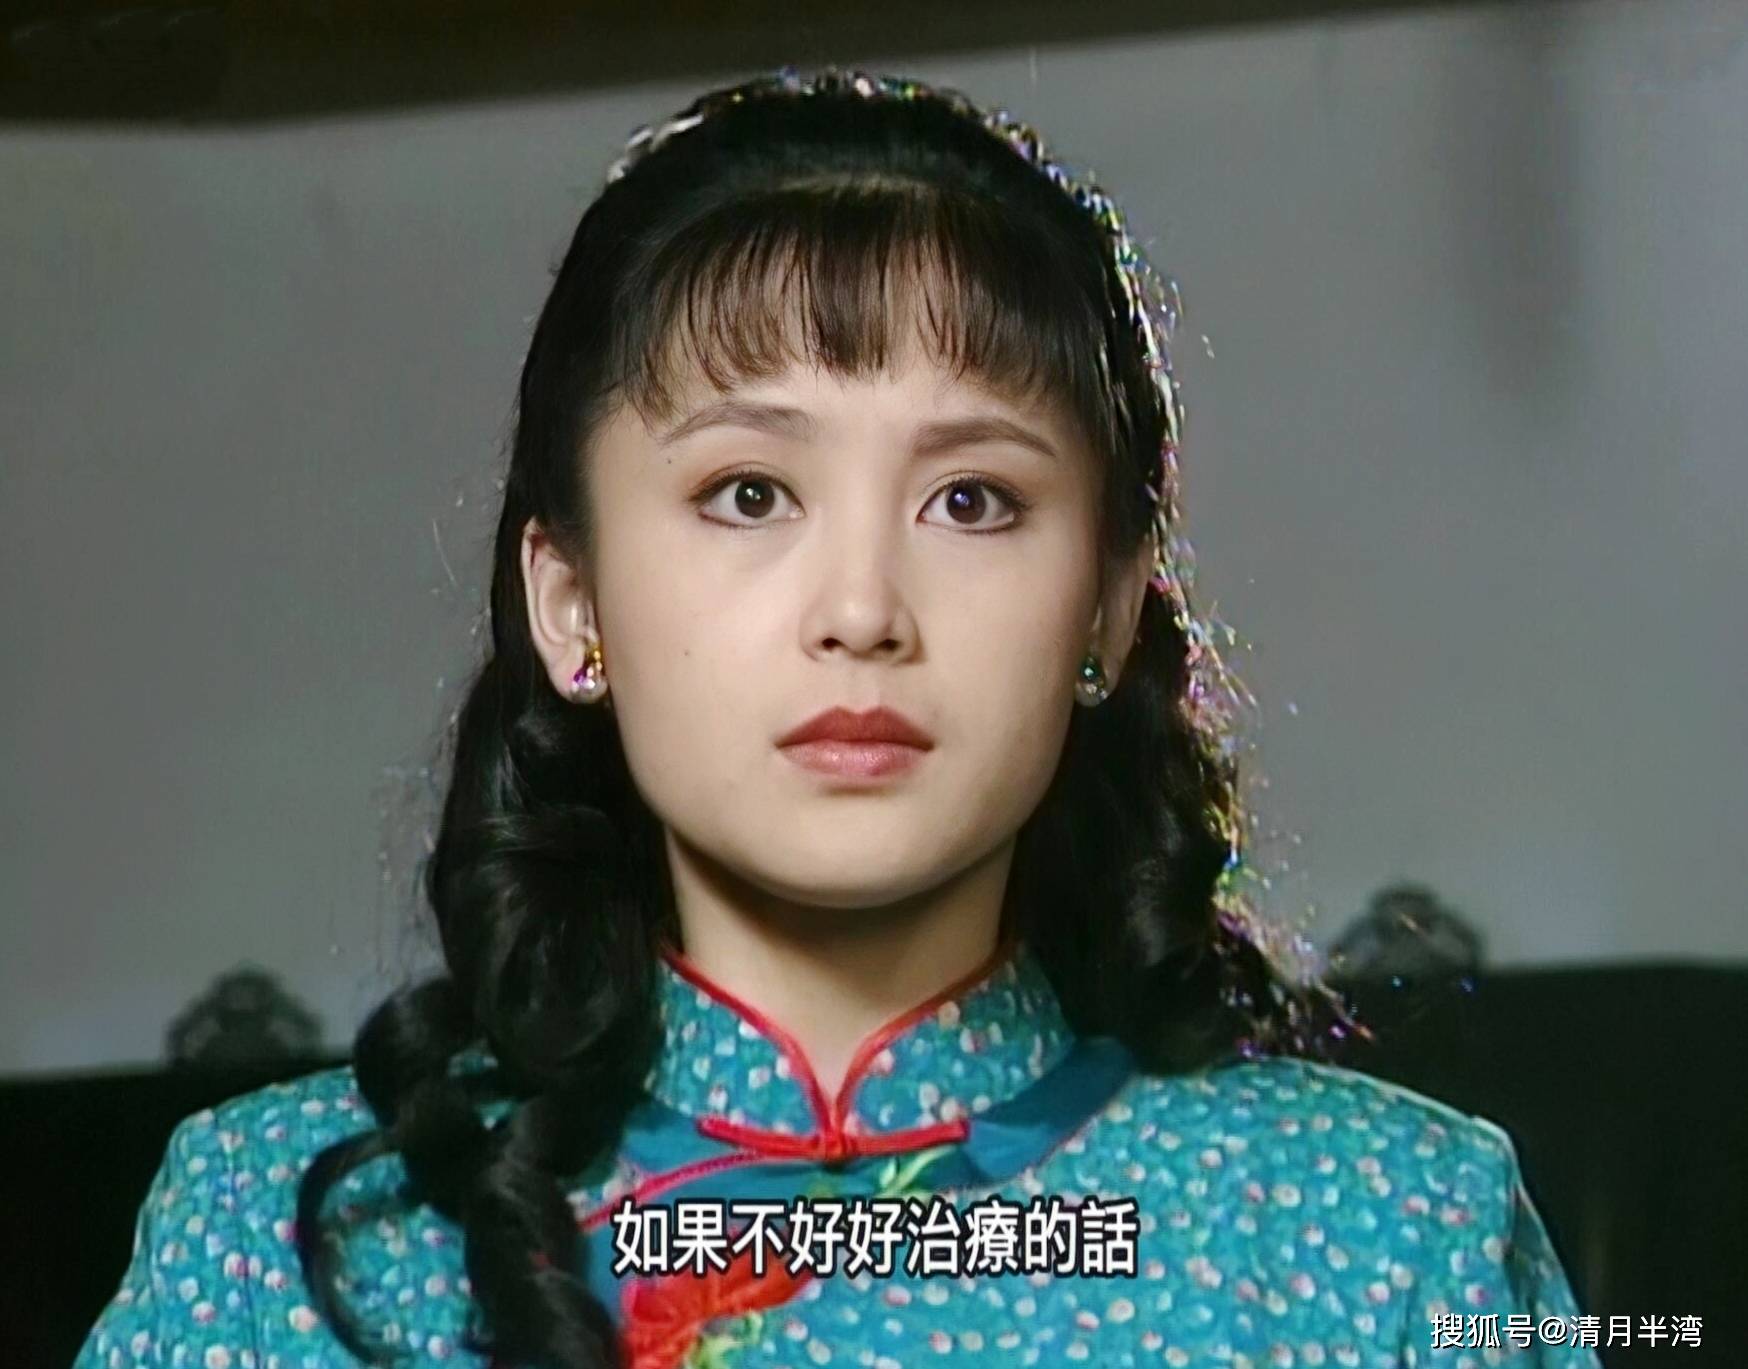 靠着这份光润玉颜,1993年,陈红被琼瑶看中,给了她《梅花三弄之水云间